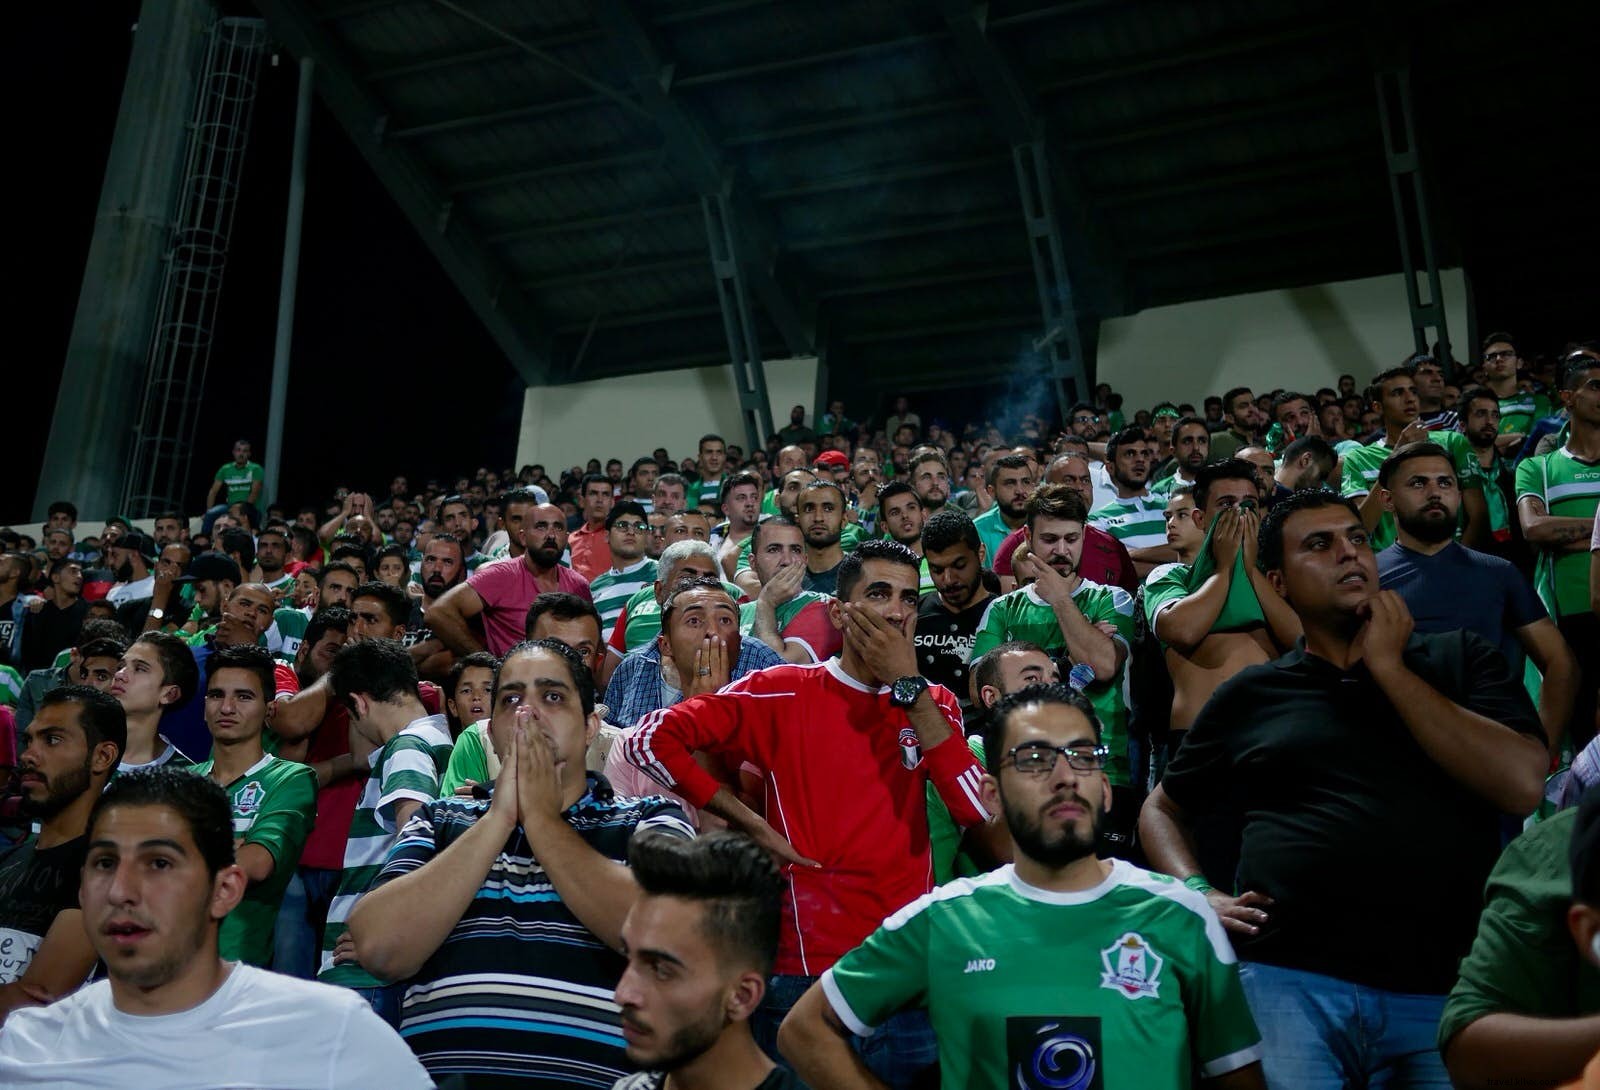 Di dalam persaingan sepak bola paling sengit di Yordania 